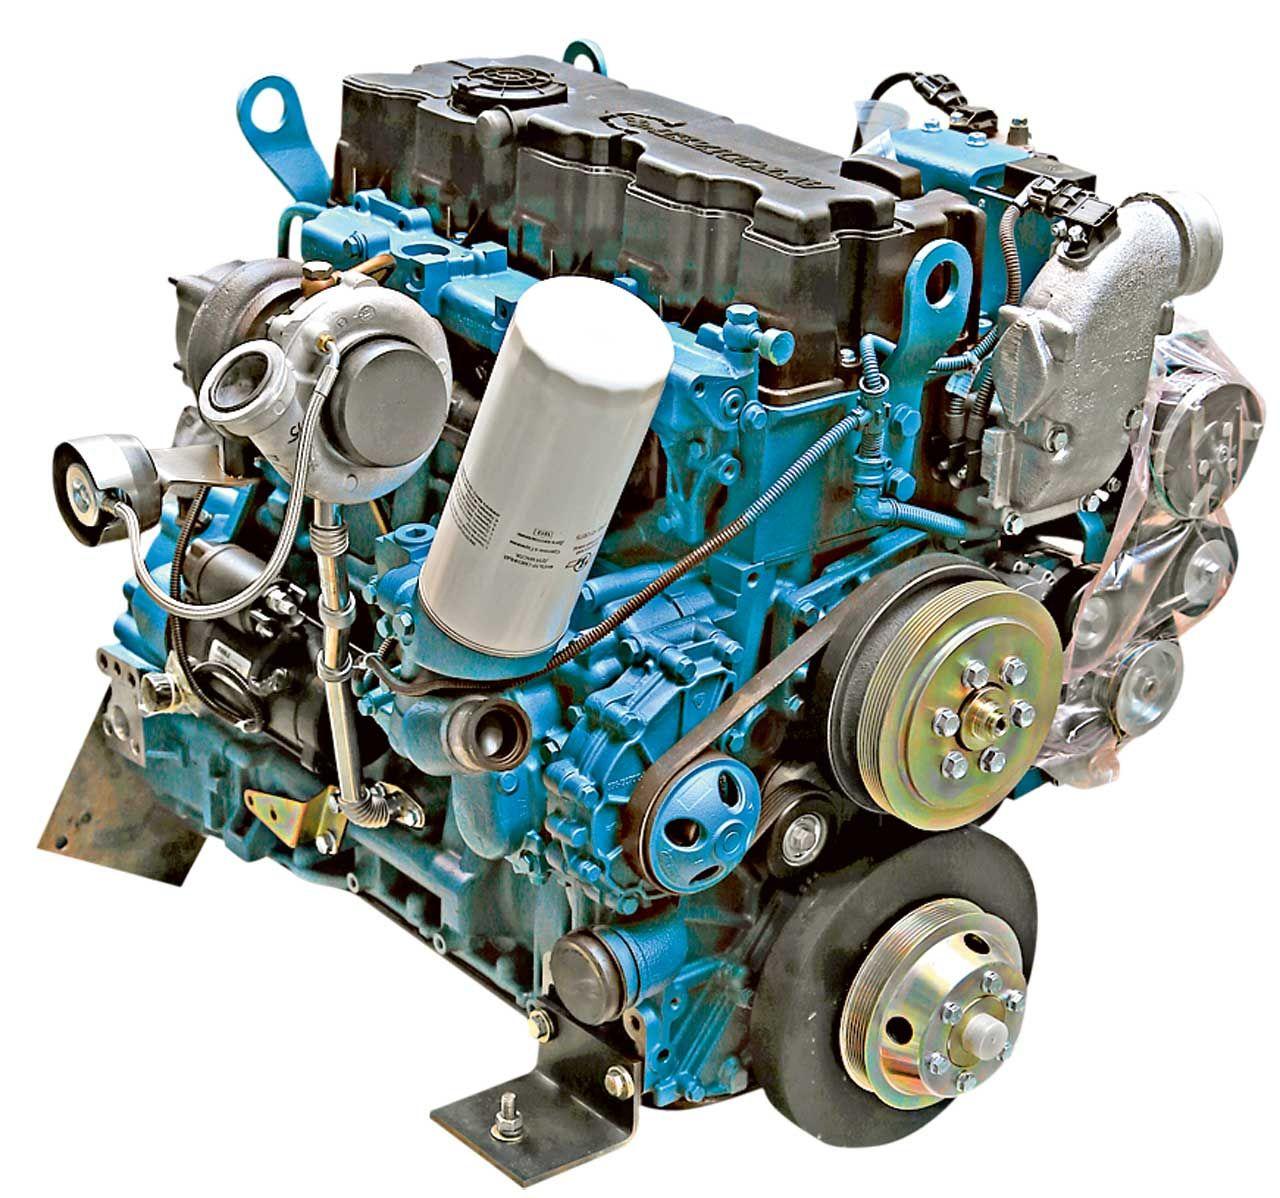 Двигатель ямз 536 масло. ЯМЗ 534 двигатель дизель. Мотор ЯМЗ 536. Двигатель ГАЗ Некст ЯМЗ. Рядный двигатель ЯМЗ 536.